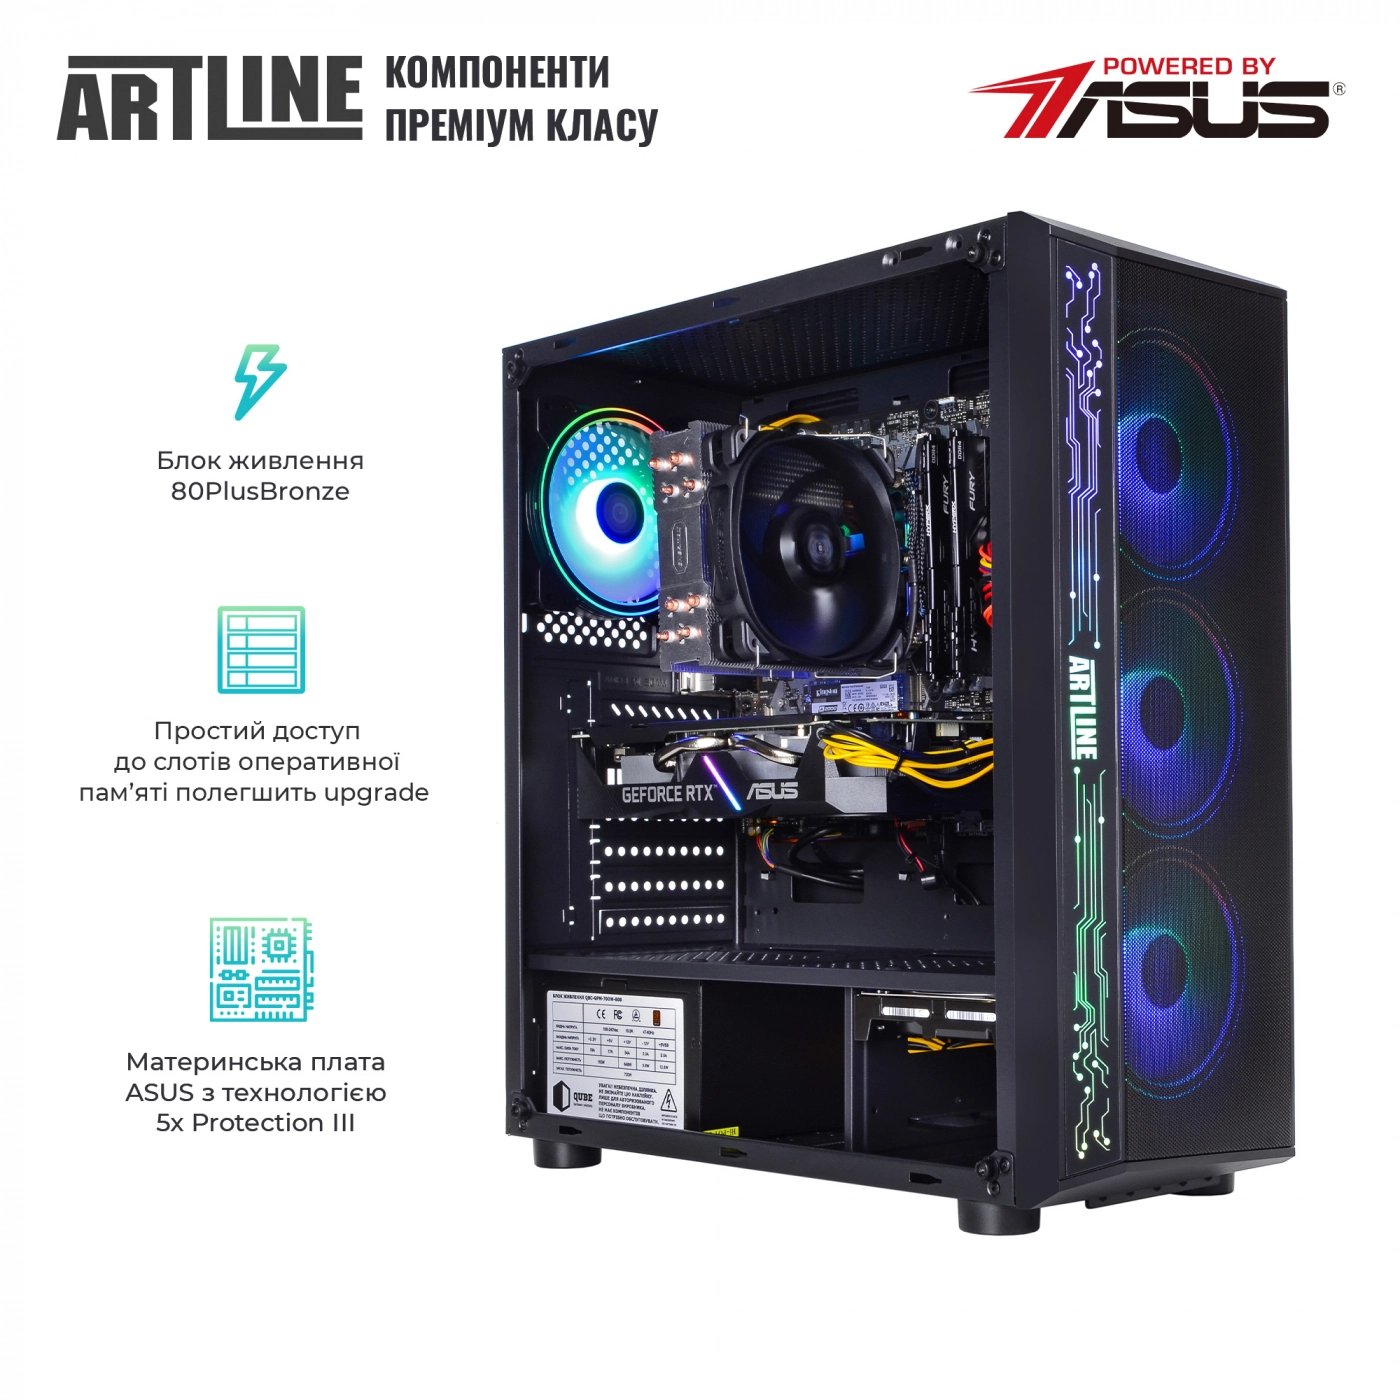 Купить Компьютер ARTLINE Gaming X74v17 - фото 2